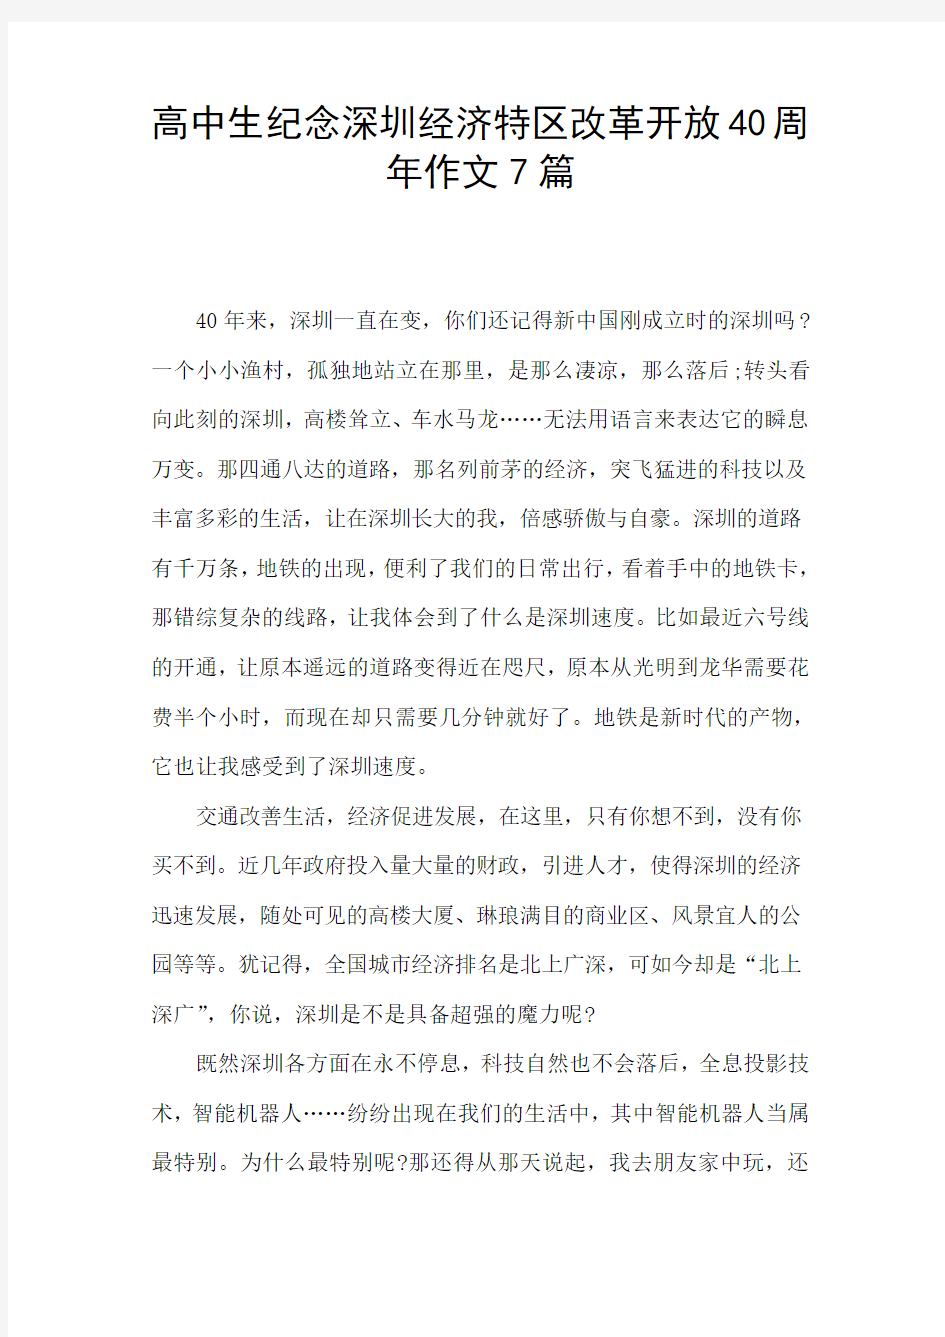 高中生纪念深圳经济特区改革开放40周年作文7篇